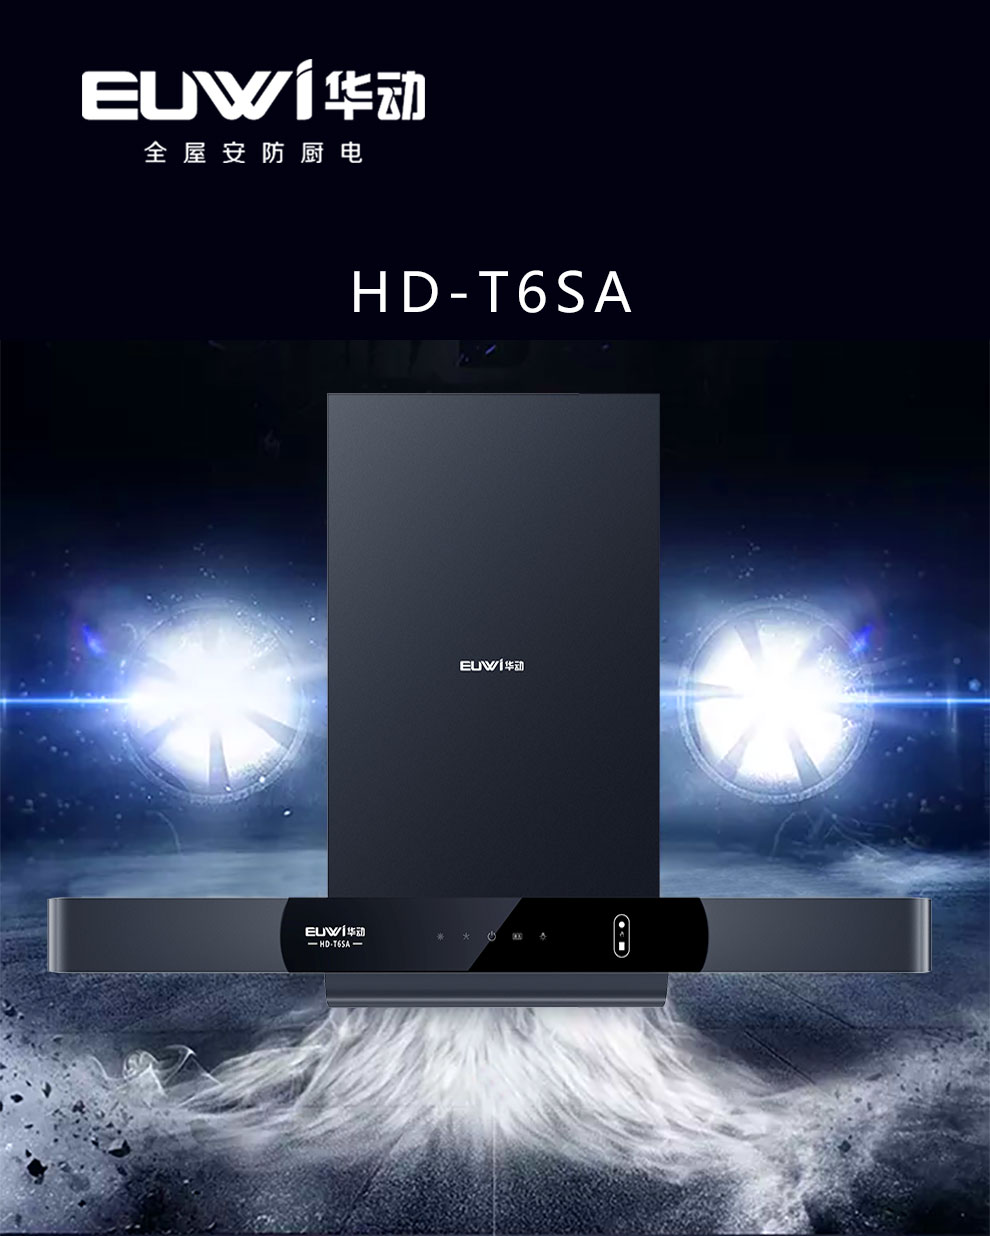 新品季|華動新品HD-T6SA吸油煙機榮耀上市！ 華動廚衛 華動廚衛電器 3天前